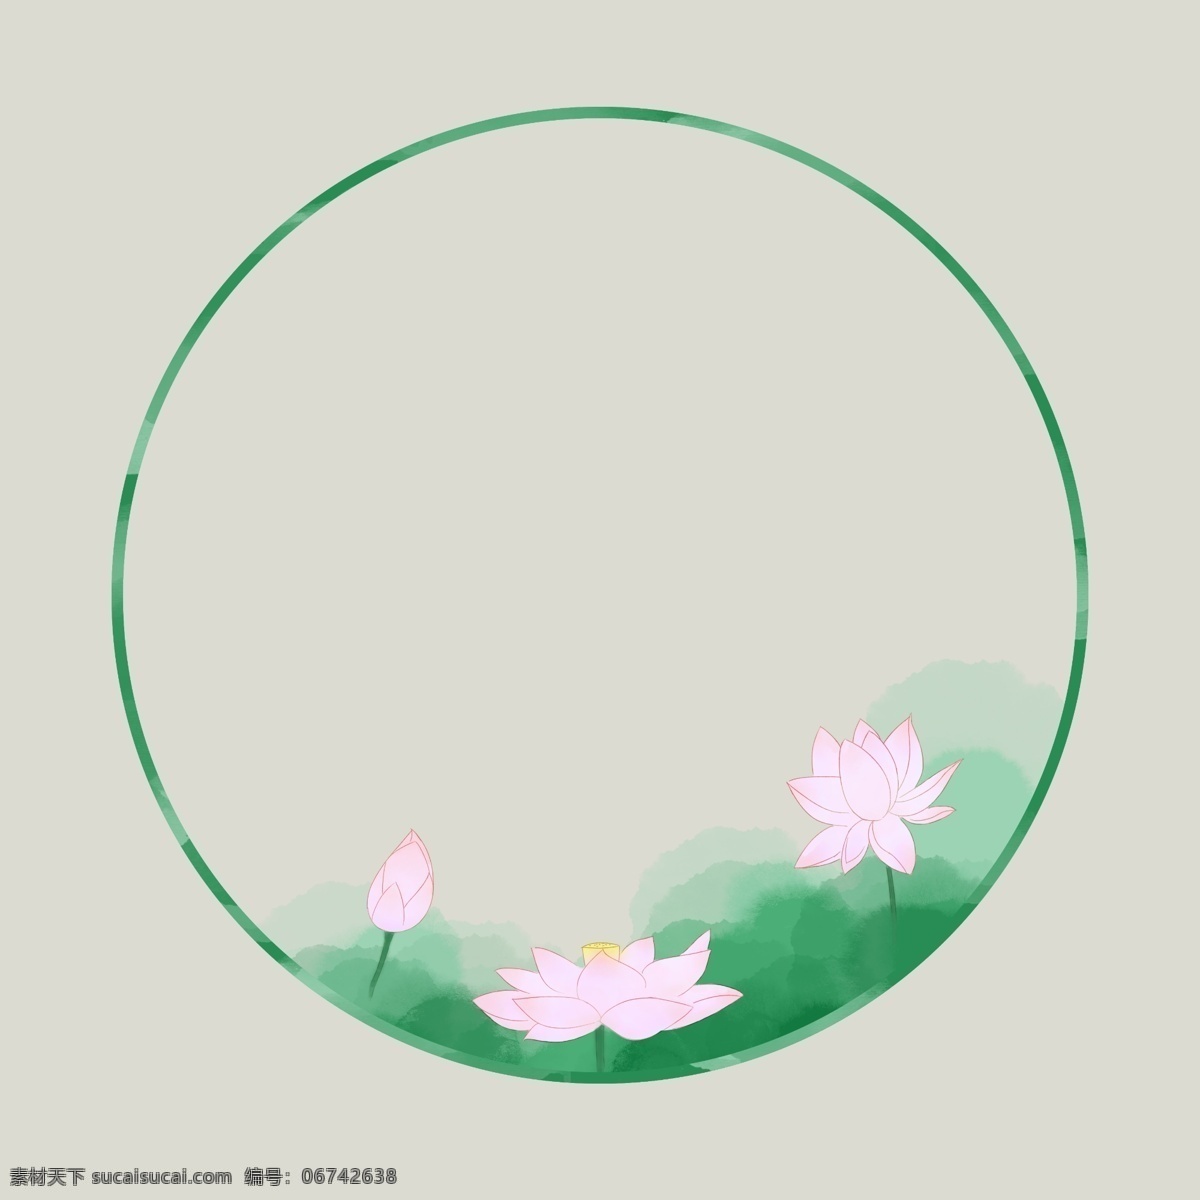 圆形 边框 水彩 水墨 淡 粉红 荷花 圆形边框 粉色荷花 荷叶 中国风 清新 春天 夏天 绿色 夏至 节气 四季